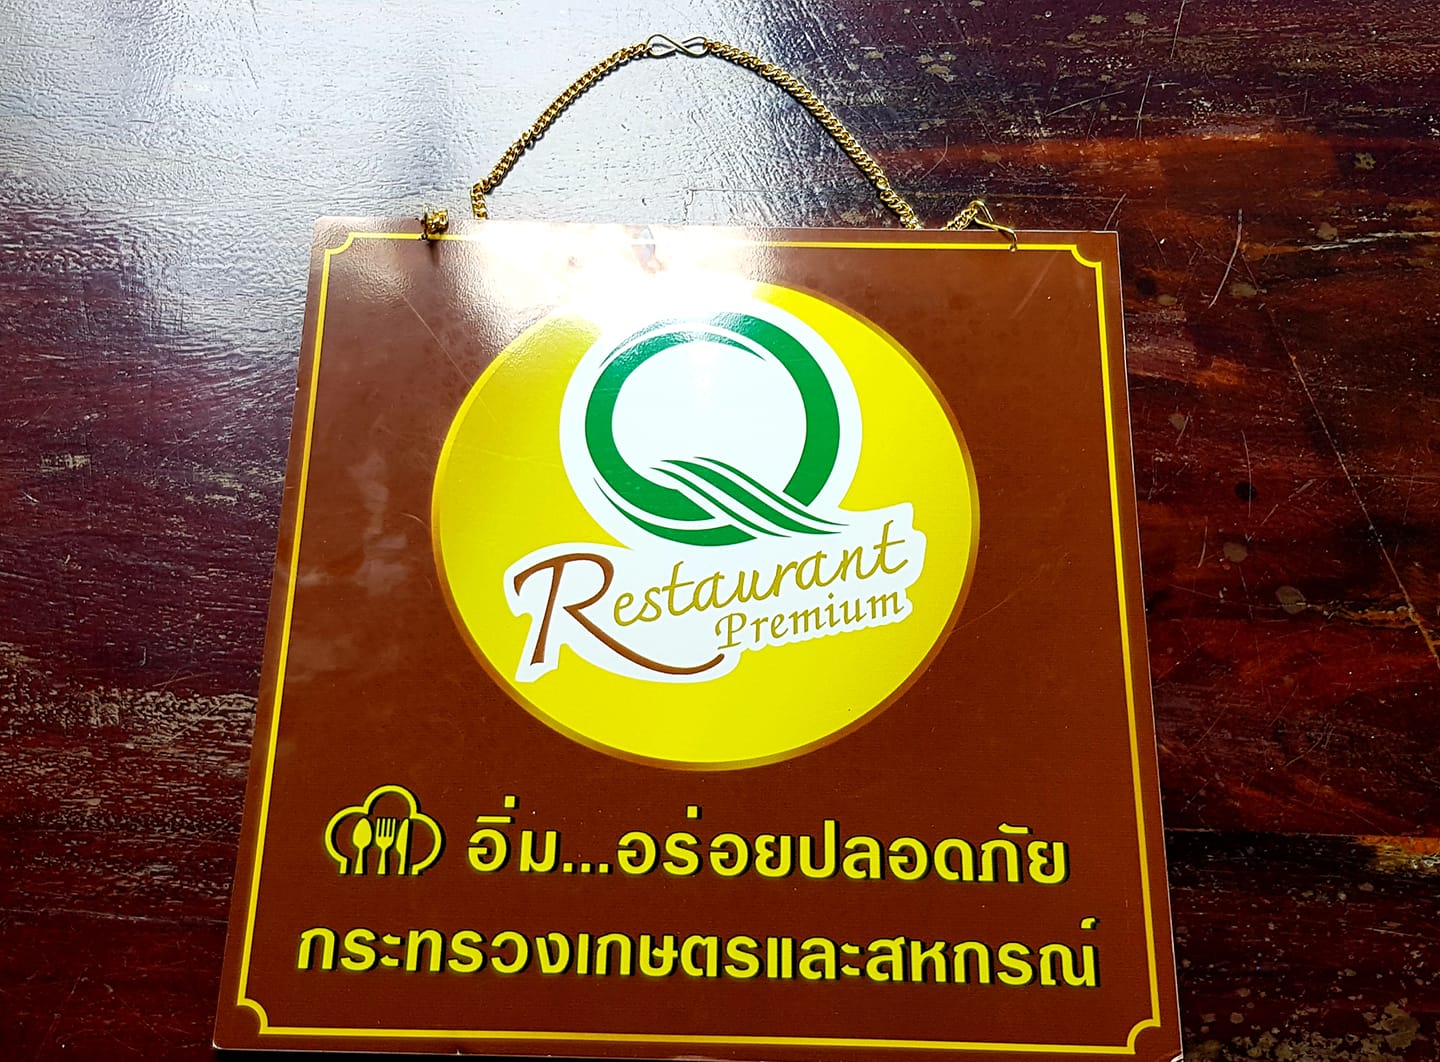 Restaurant premium Q certificate